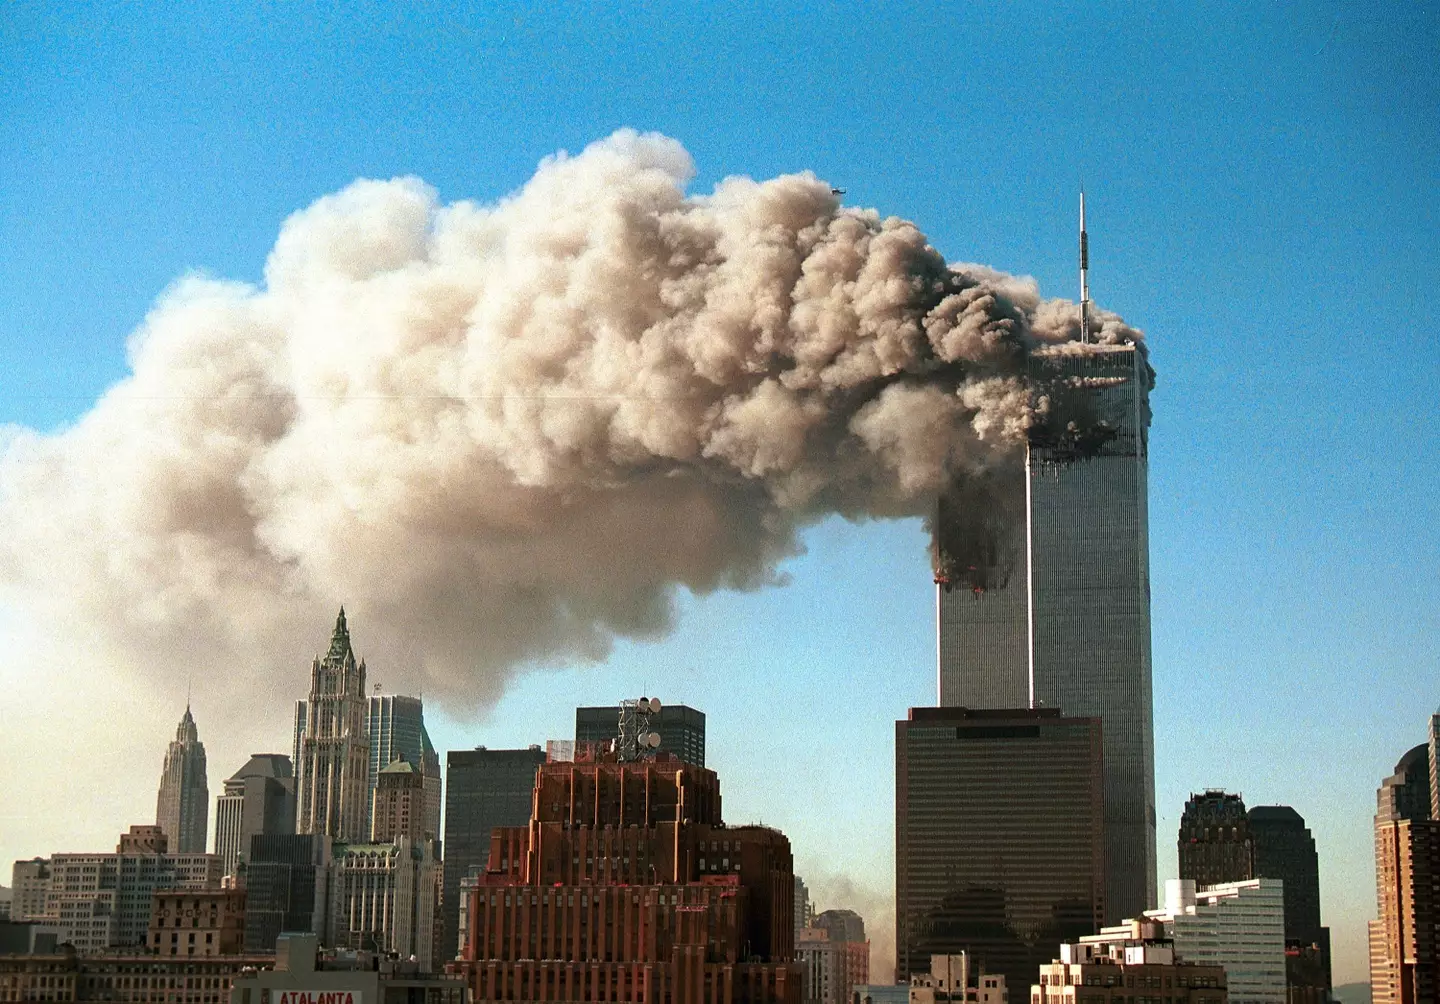 Vanga predicted the 9/11 attacks.